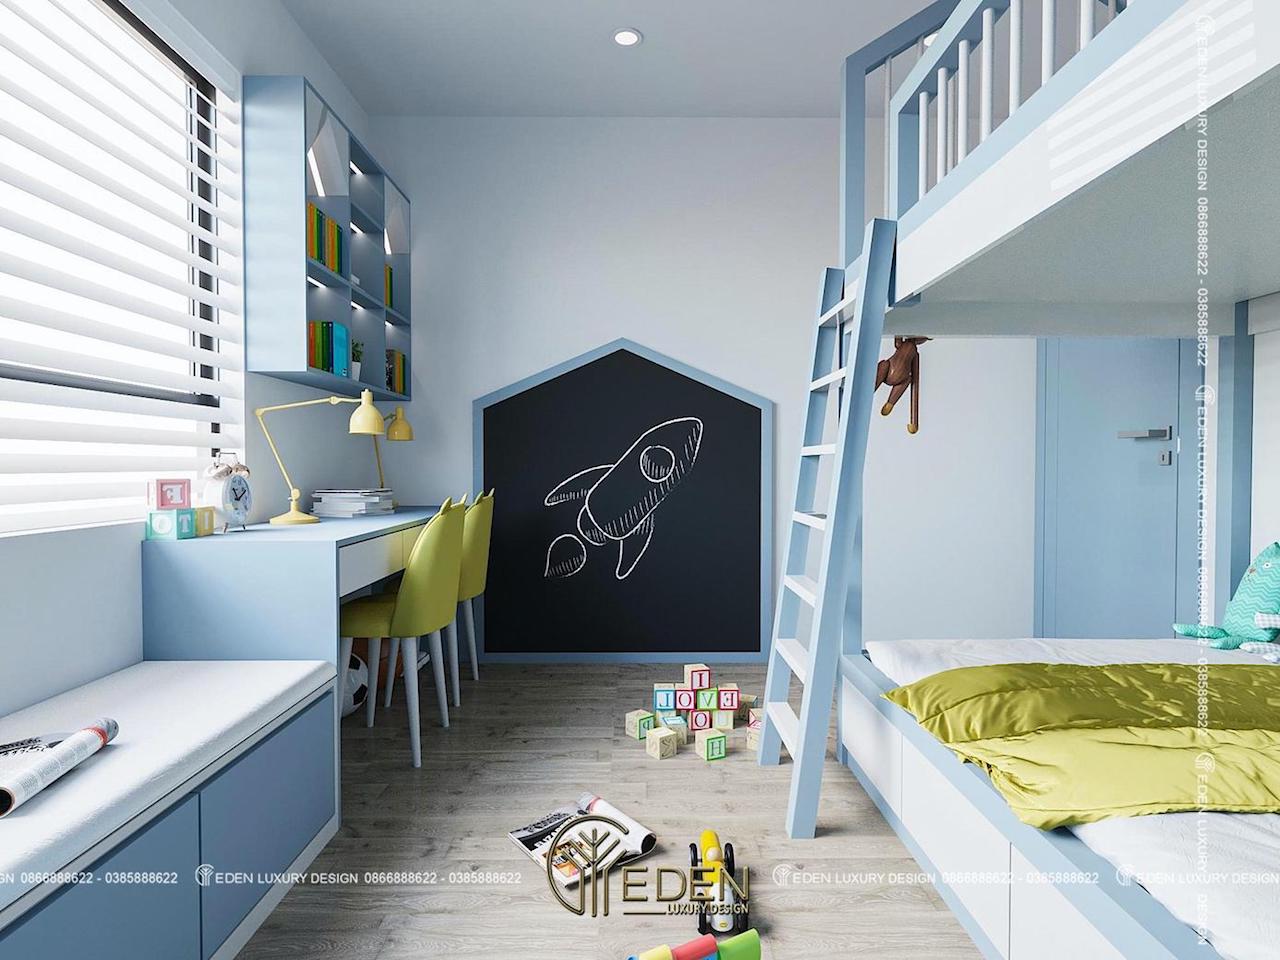 Phòng ngủ trẻ em sinh động với 2 màu xanh, vàng dịu nhẹ có thiết kế đèn âm tường tiện lợi